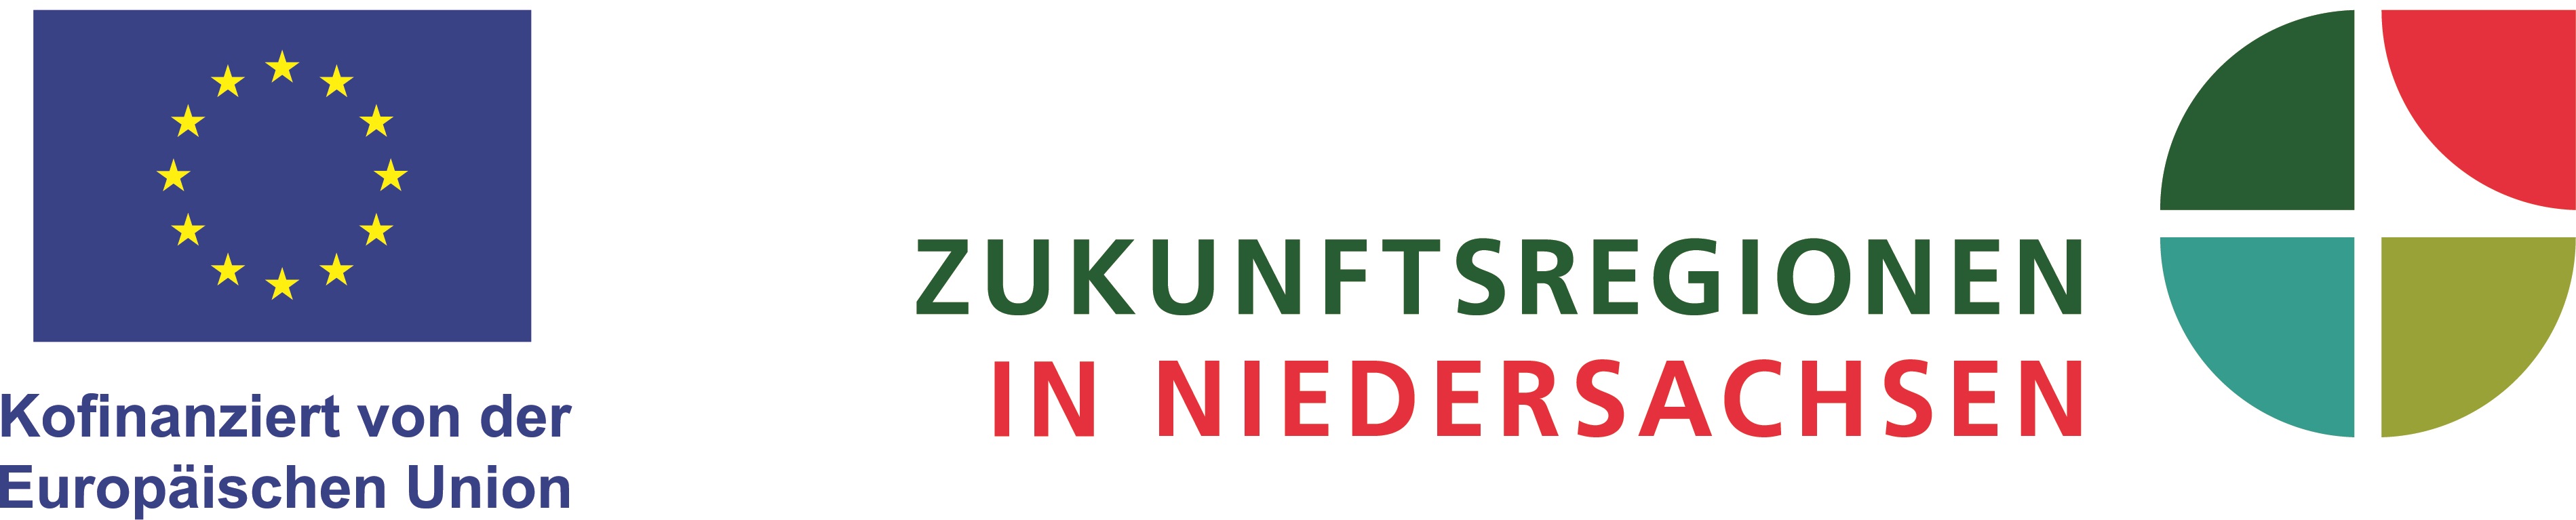 Logos der Zukunftsregionen in Niedersachsen